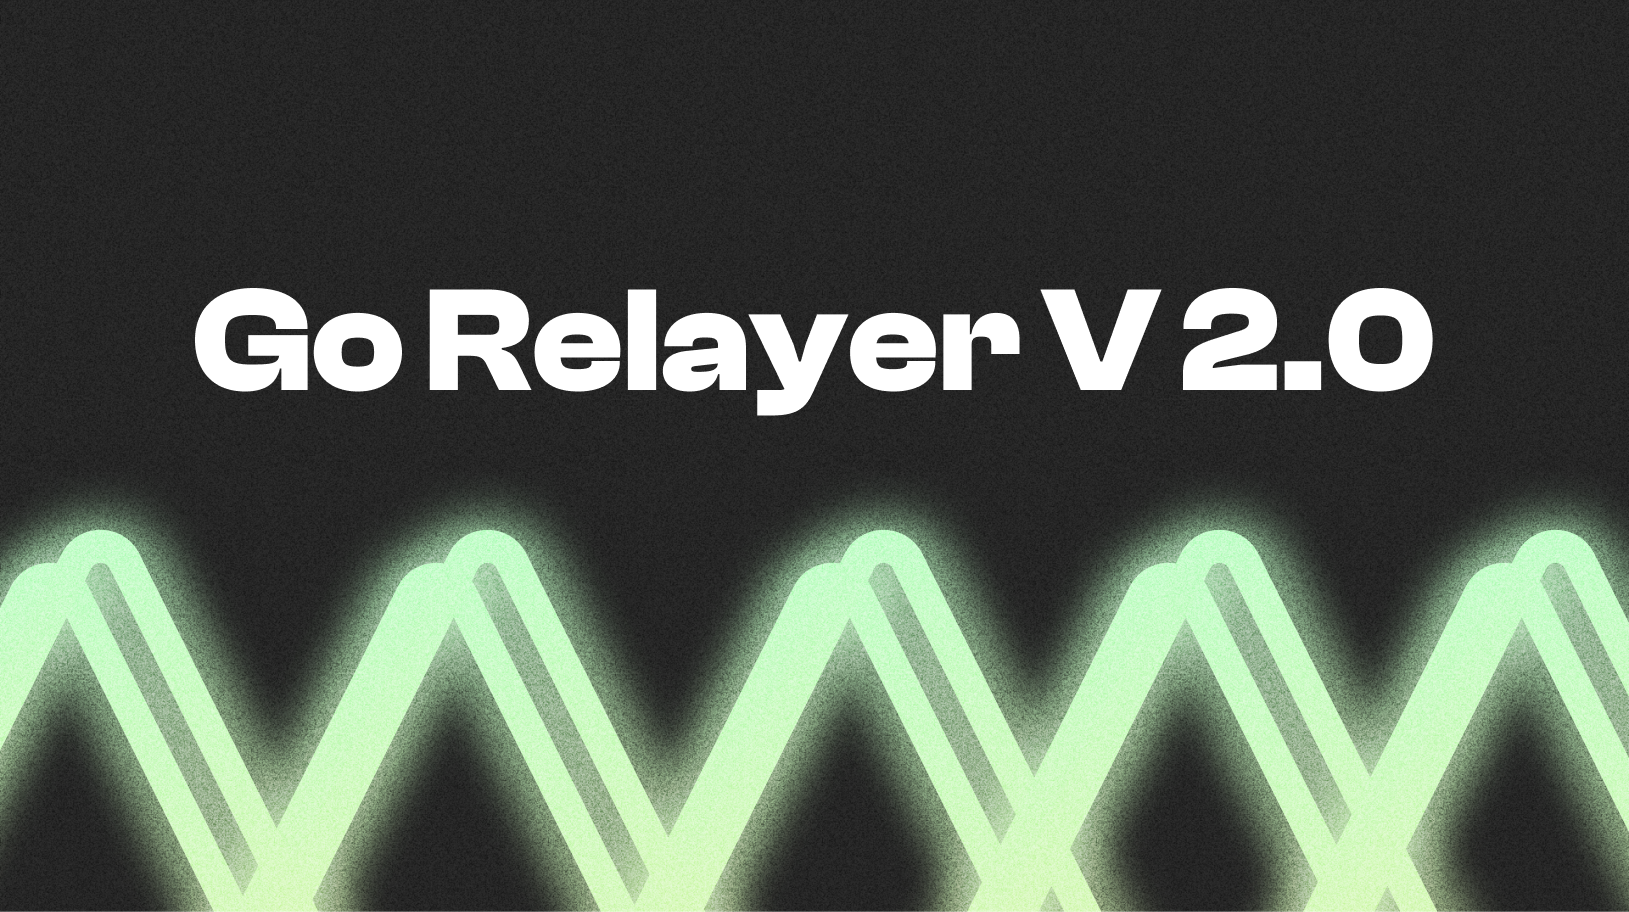 Announcing Go Relayer v2.0